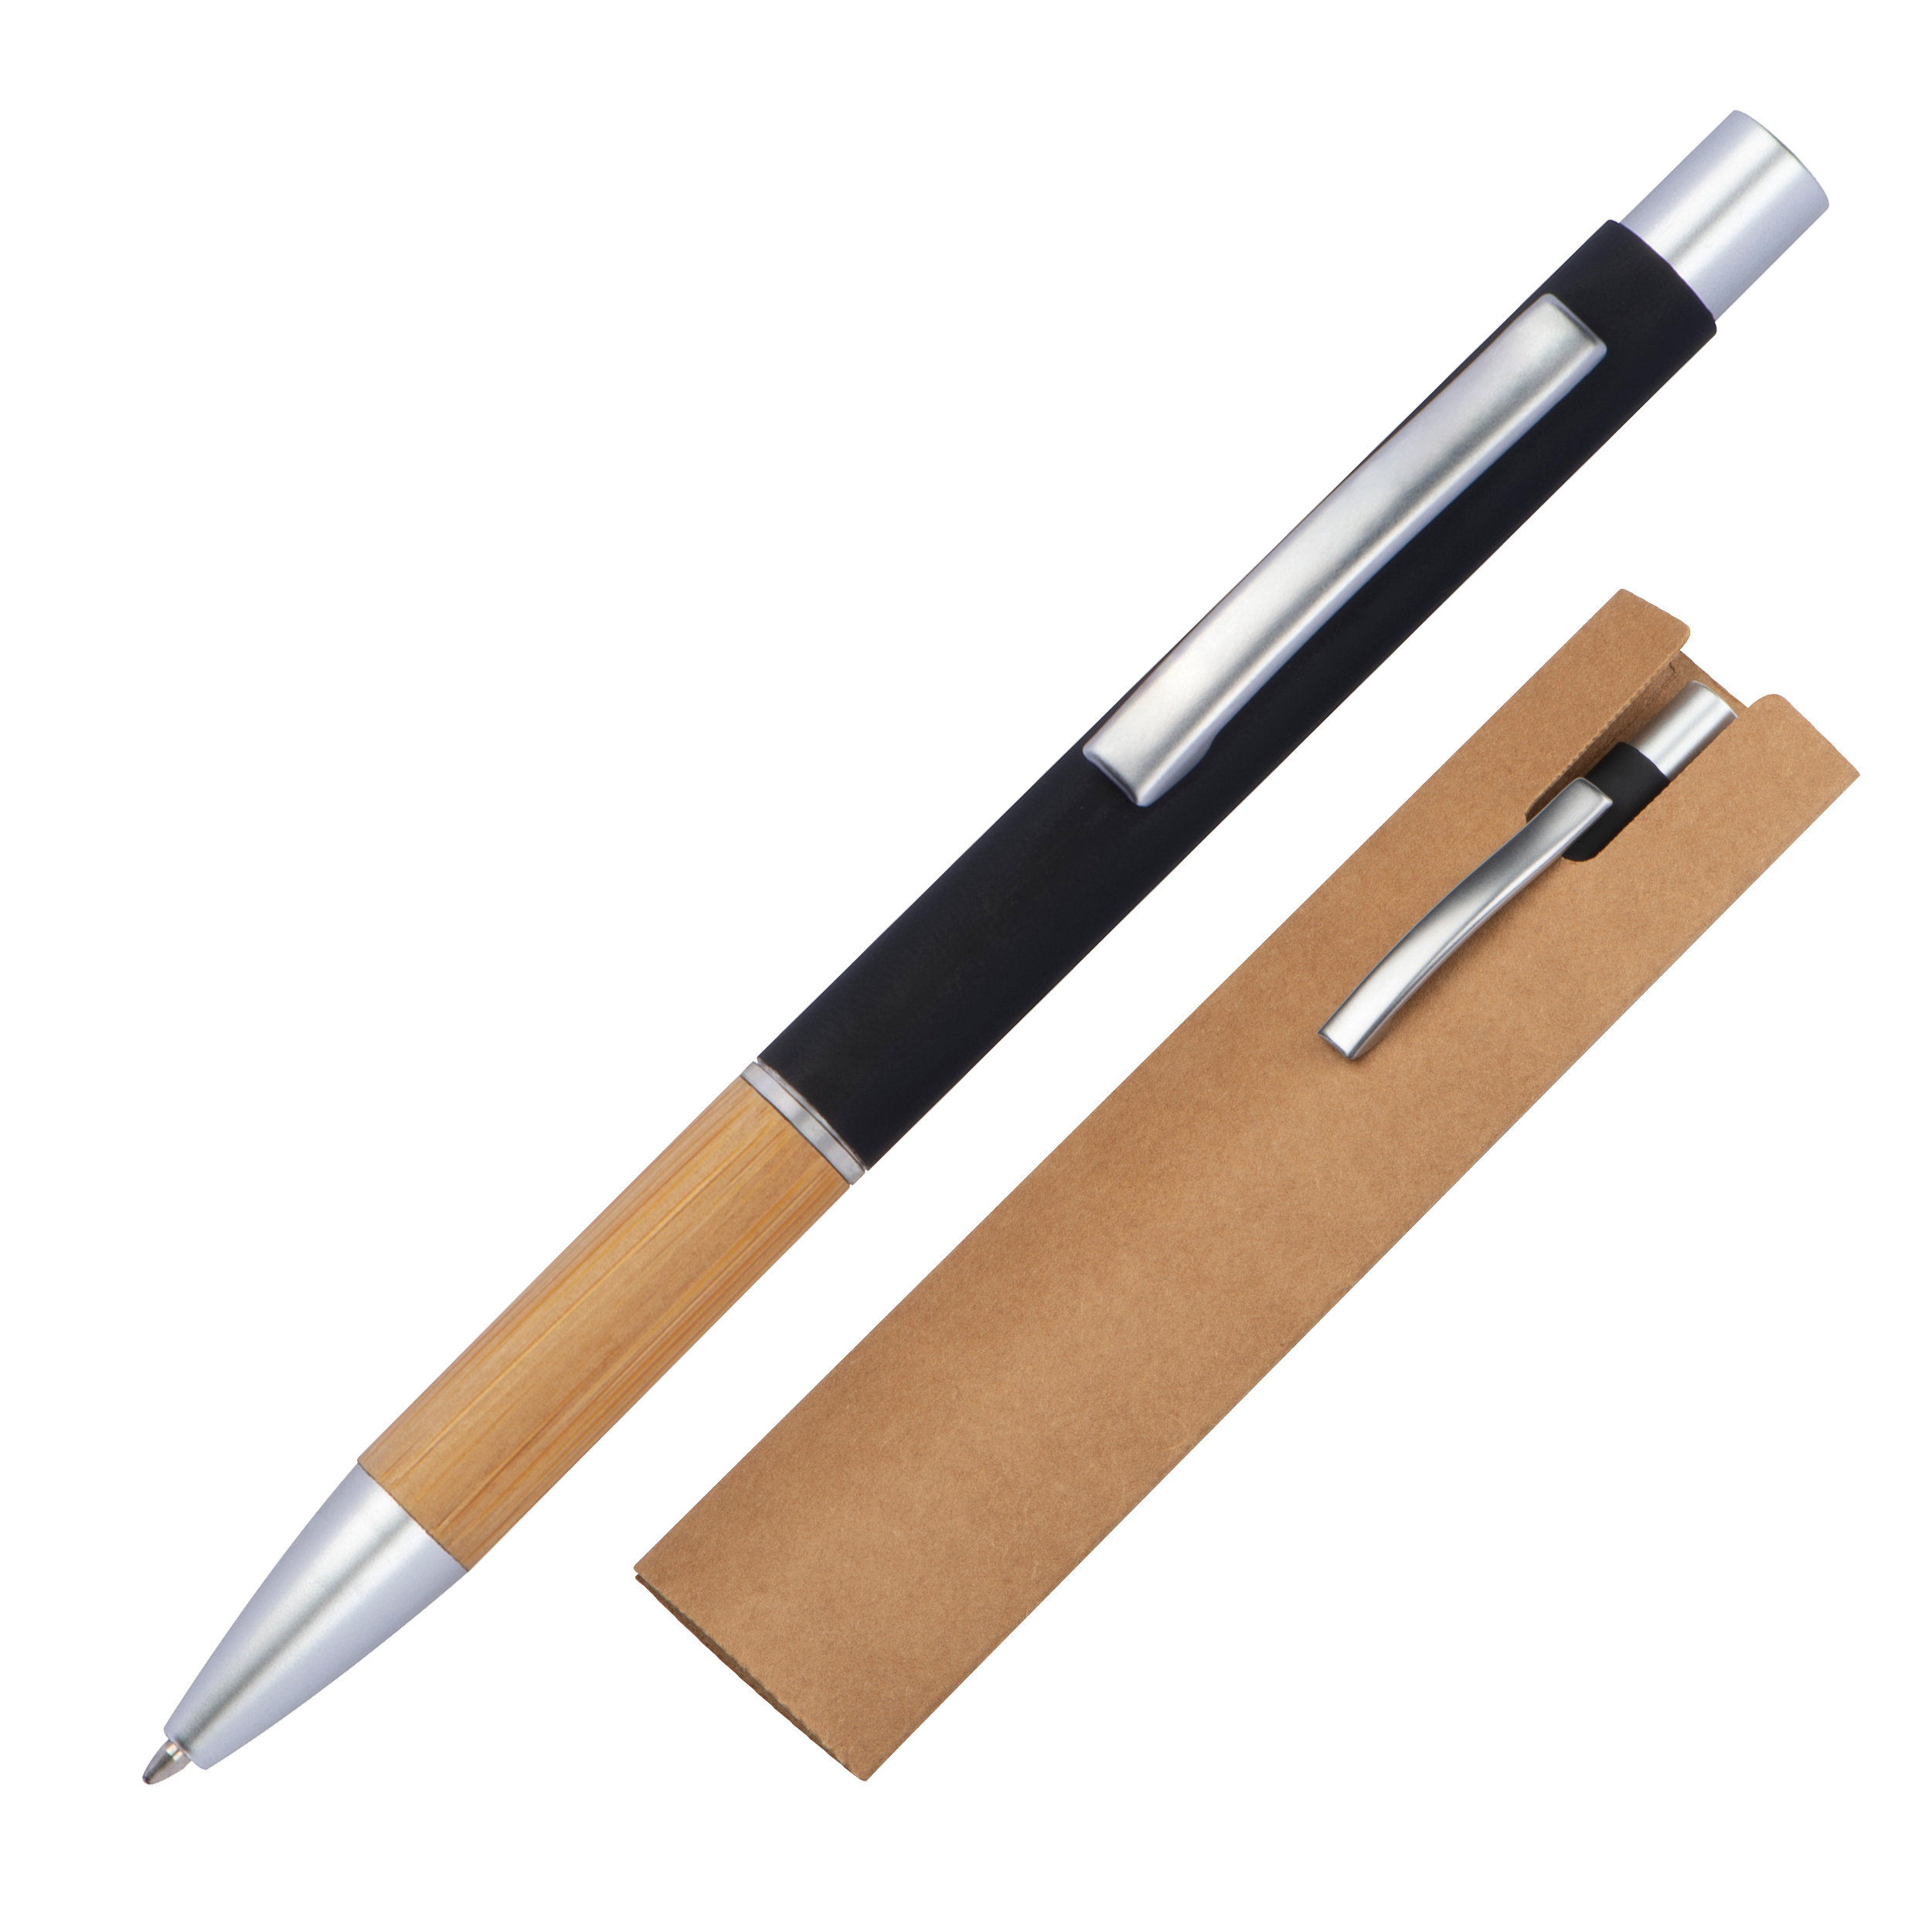 Bambusklick Kugelschreiber